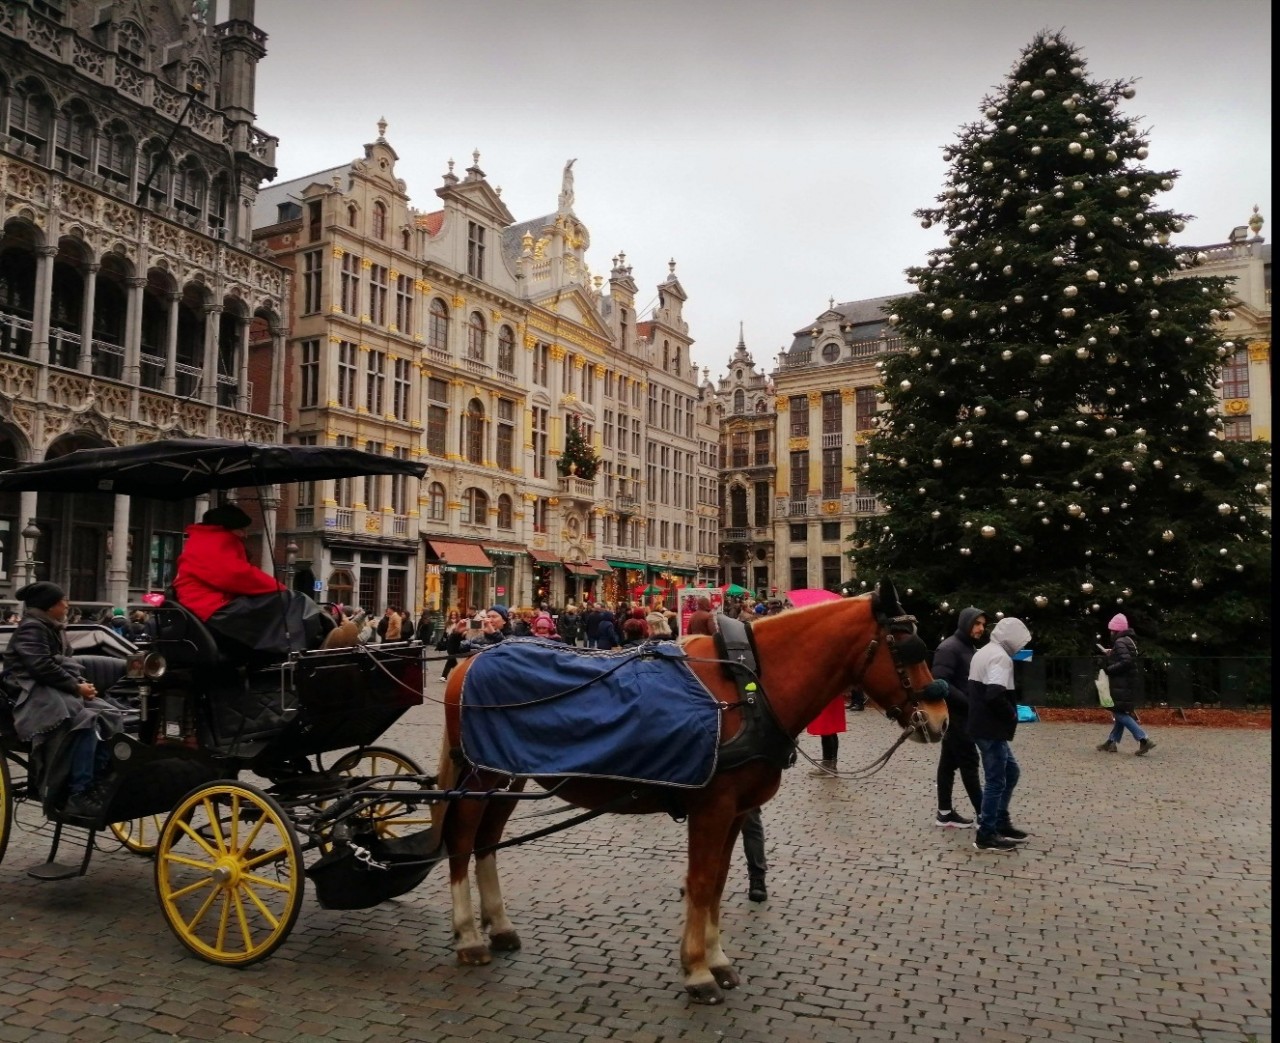 Giáng sinh sum họp gia đình và chia sẻ yêu thương của người Việt tại Bỉ